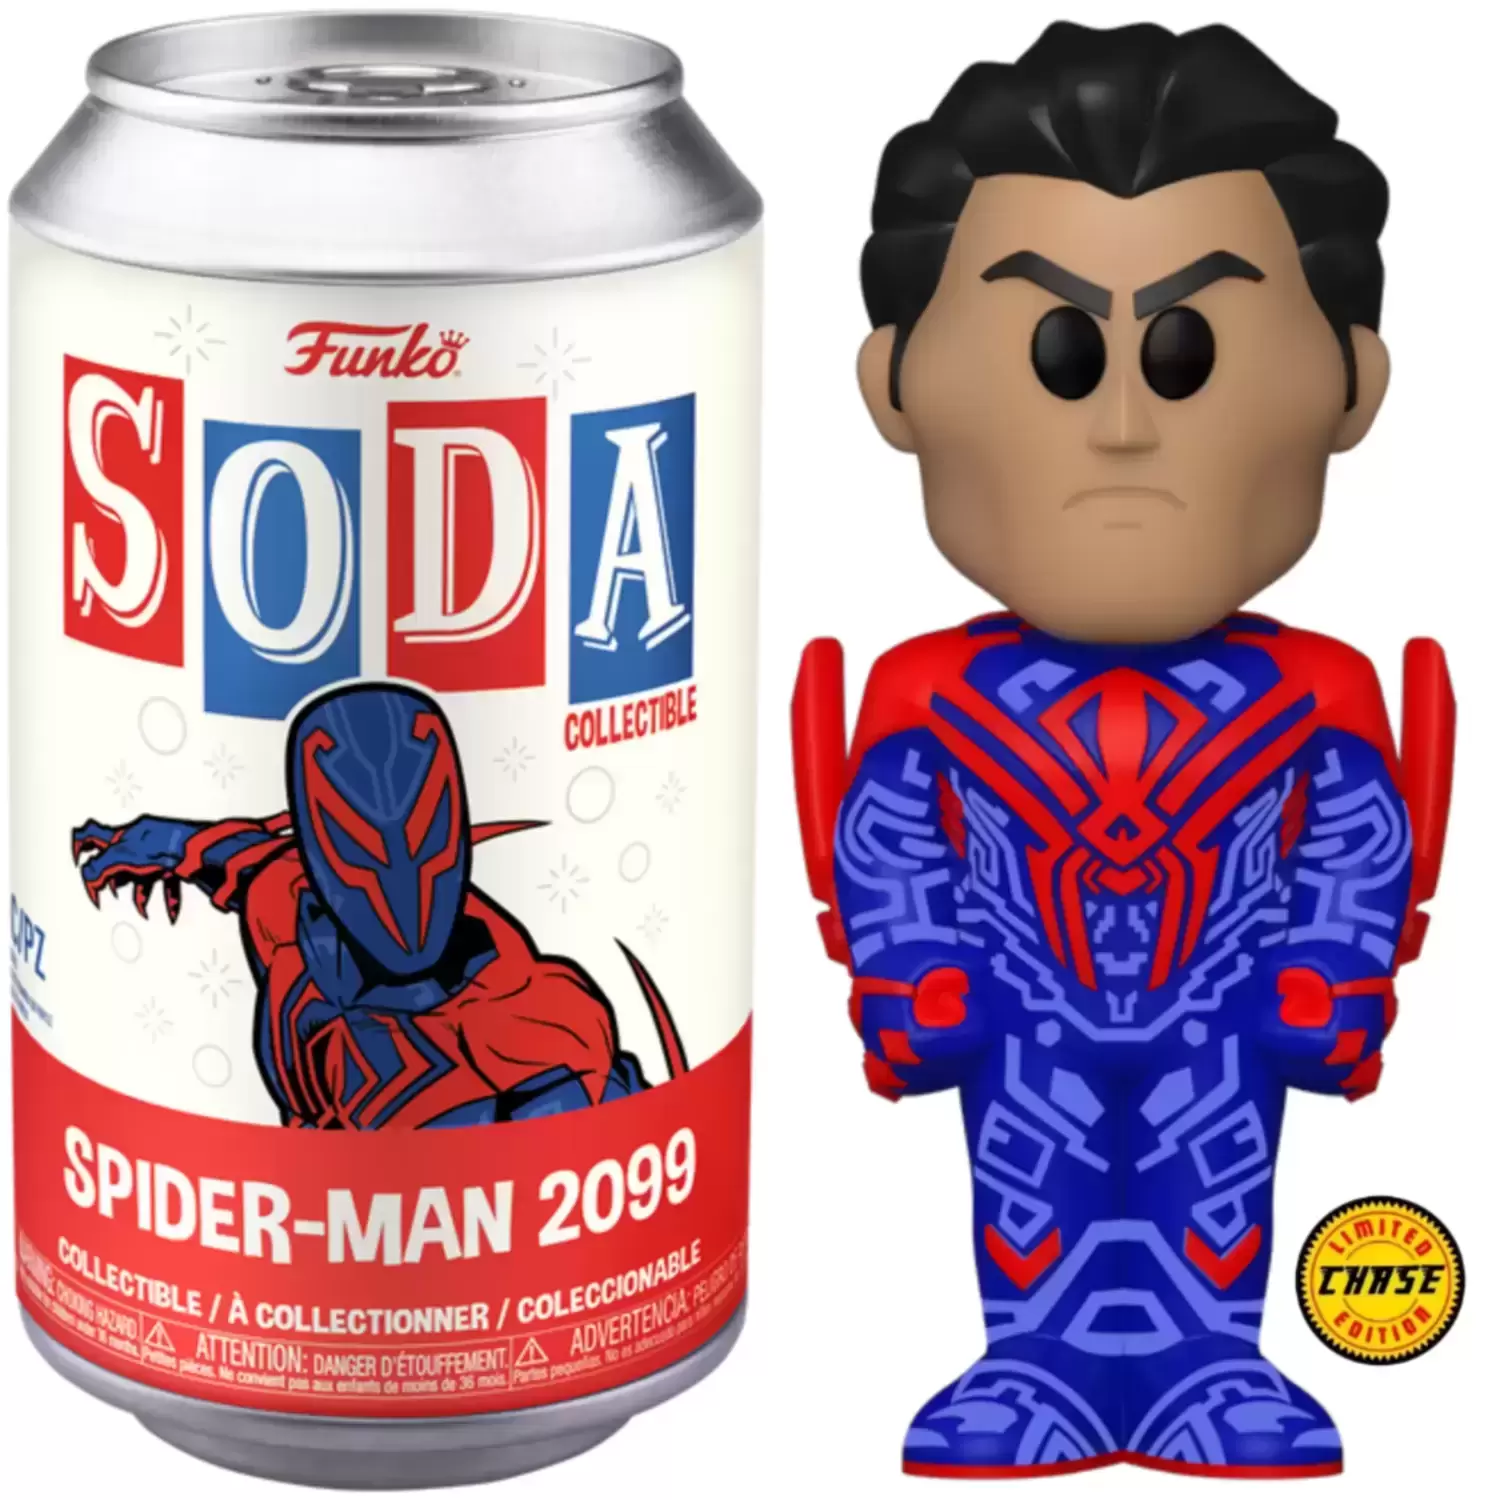 Vinyl Soda! - Spider-Man 2099 Chase